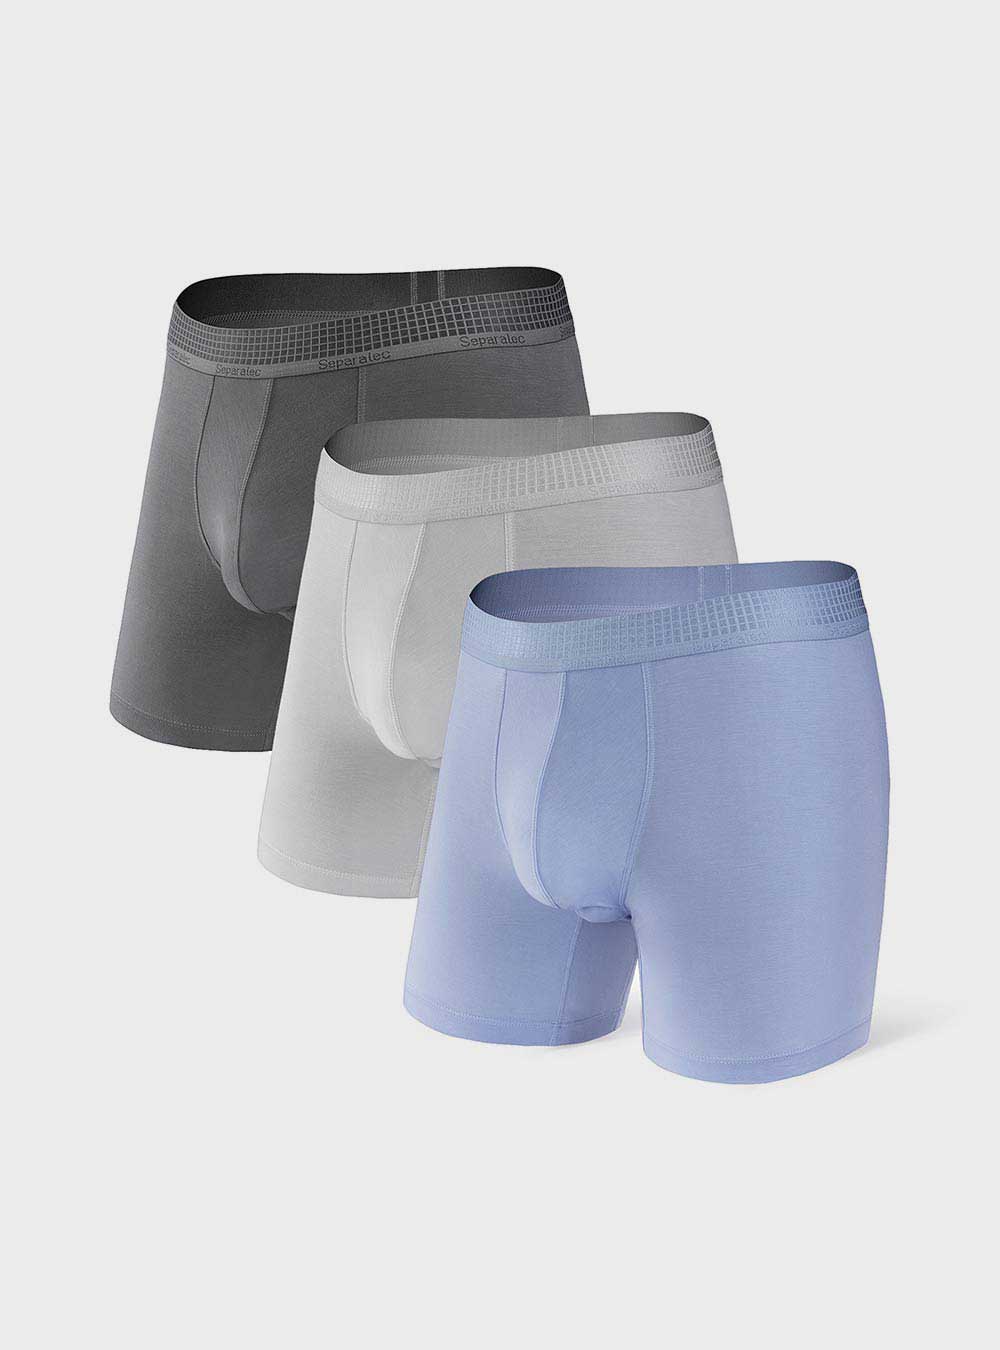 Separatec Men's Sport Performance Dual Pouch Boxer Long Leg Underwear